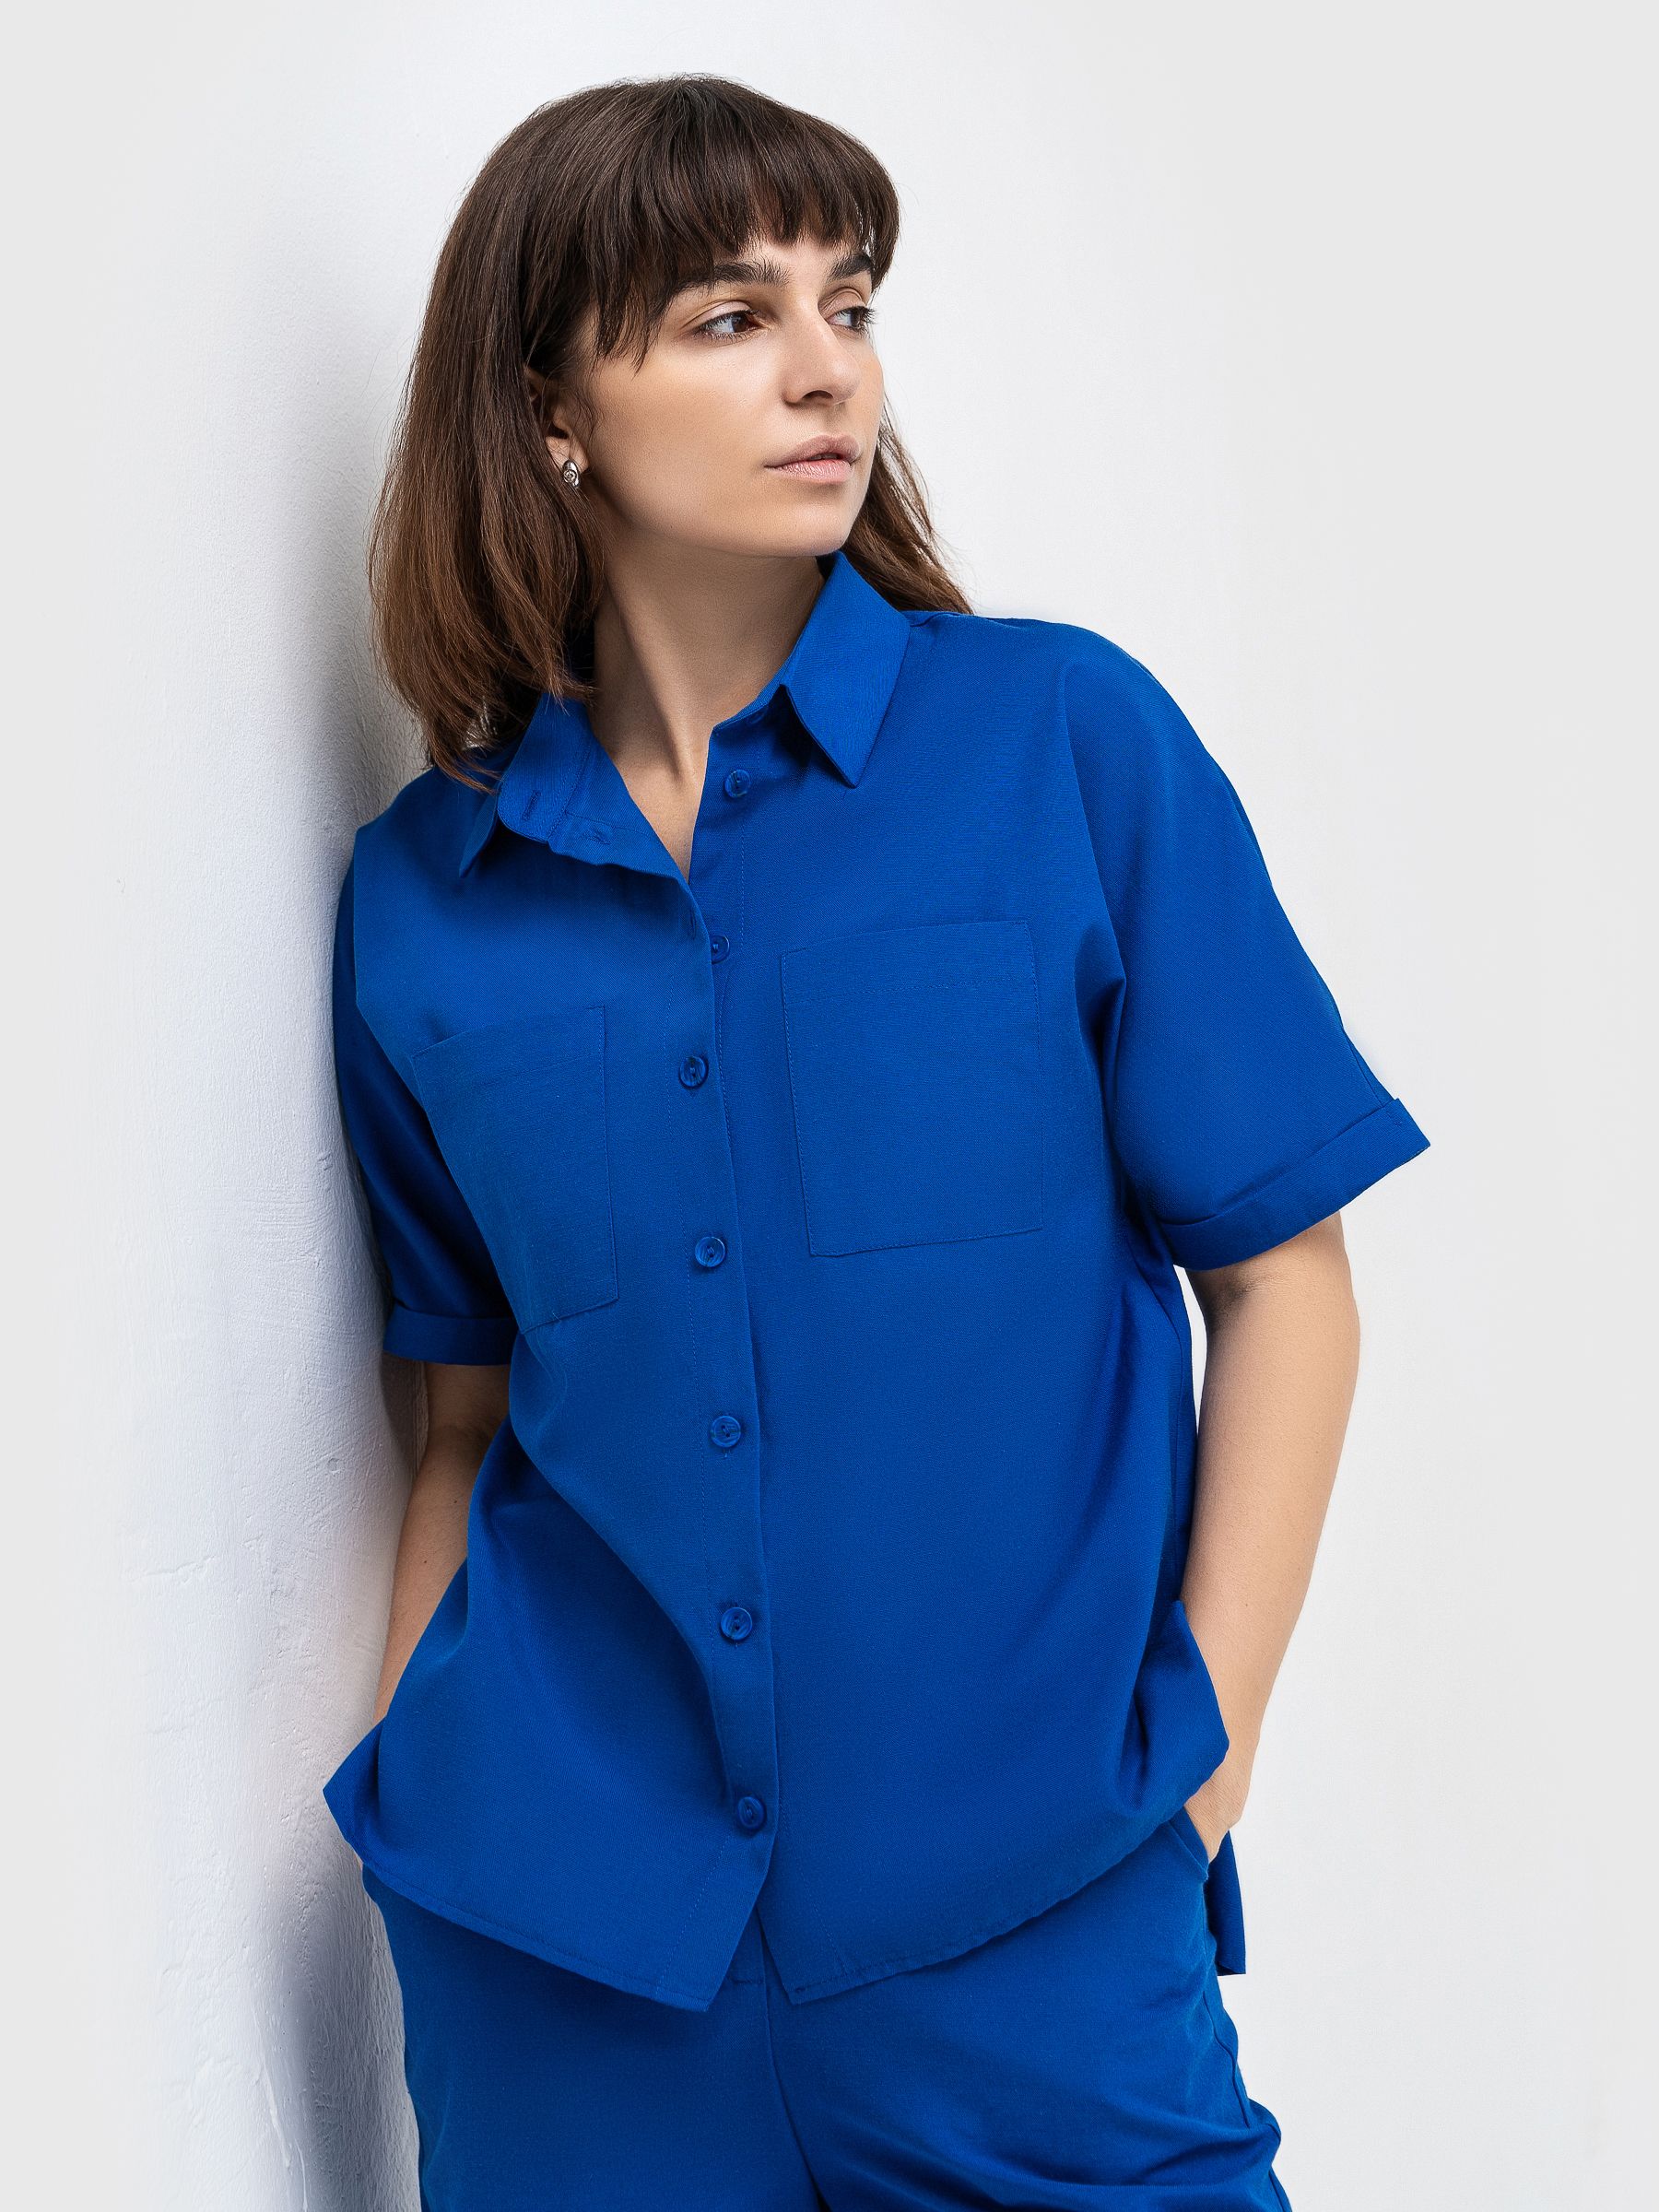 Рубашка женская AM One 1453/1 синяя 44 RU